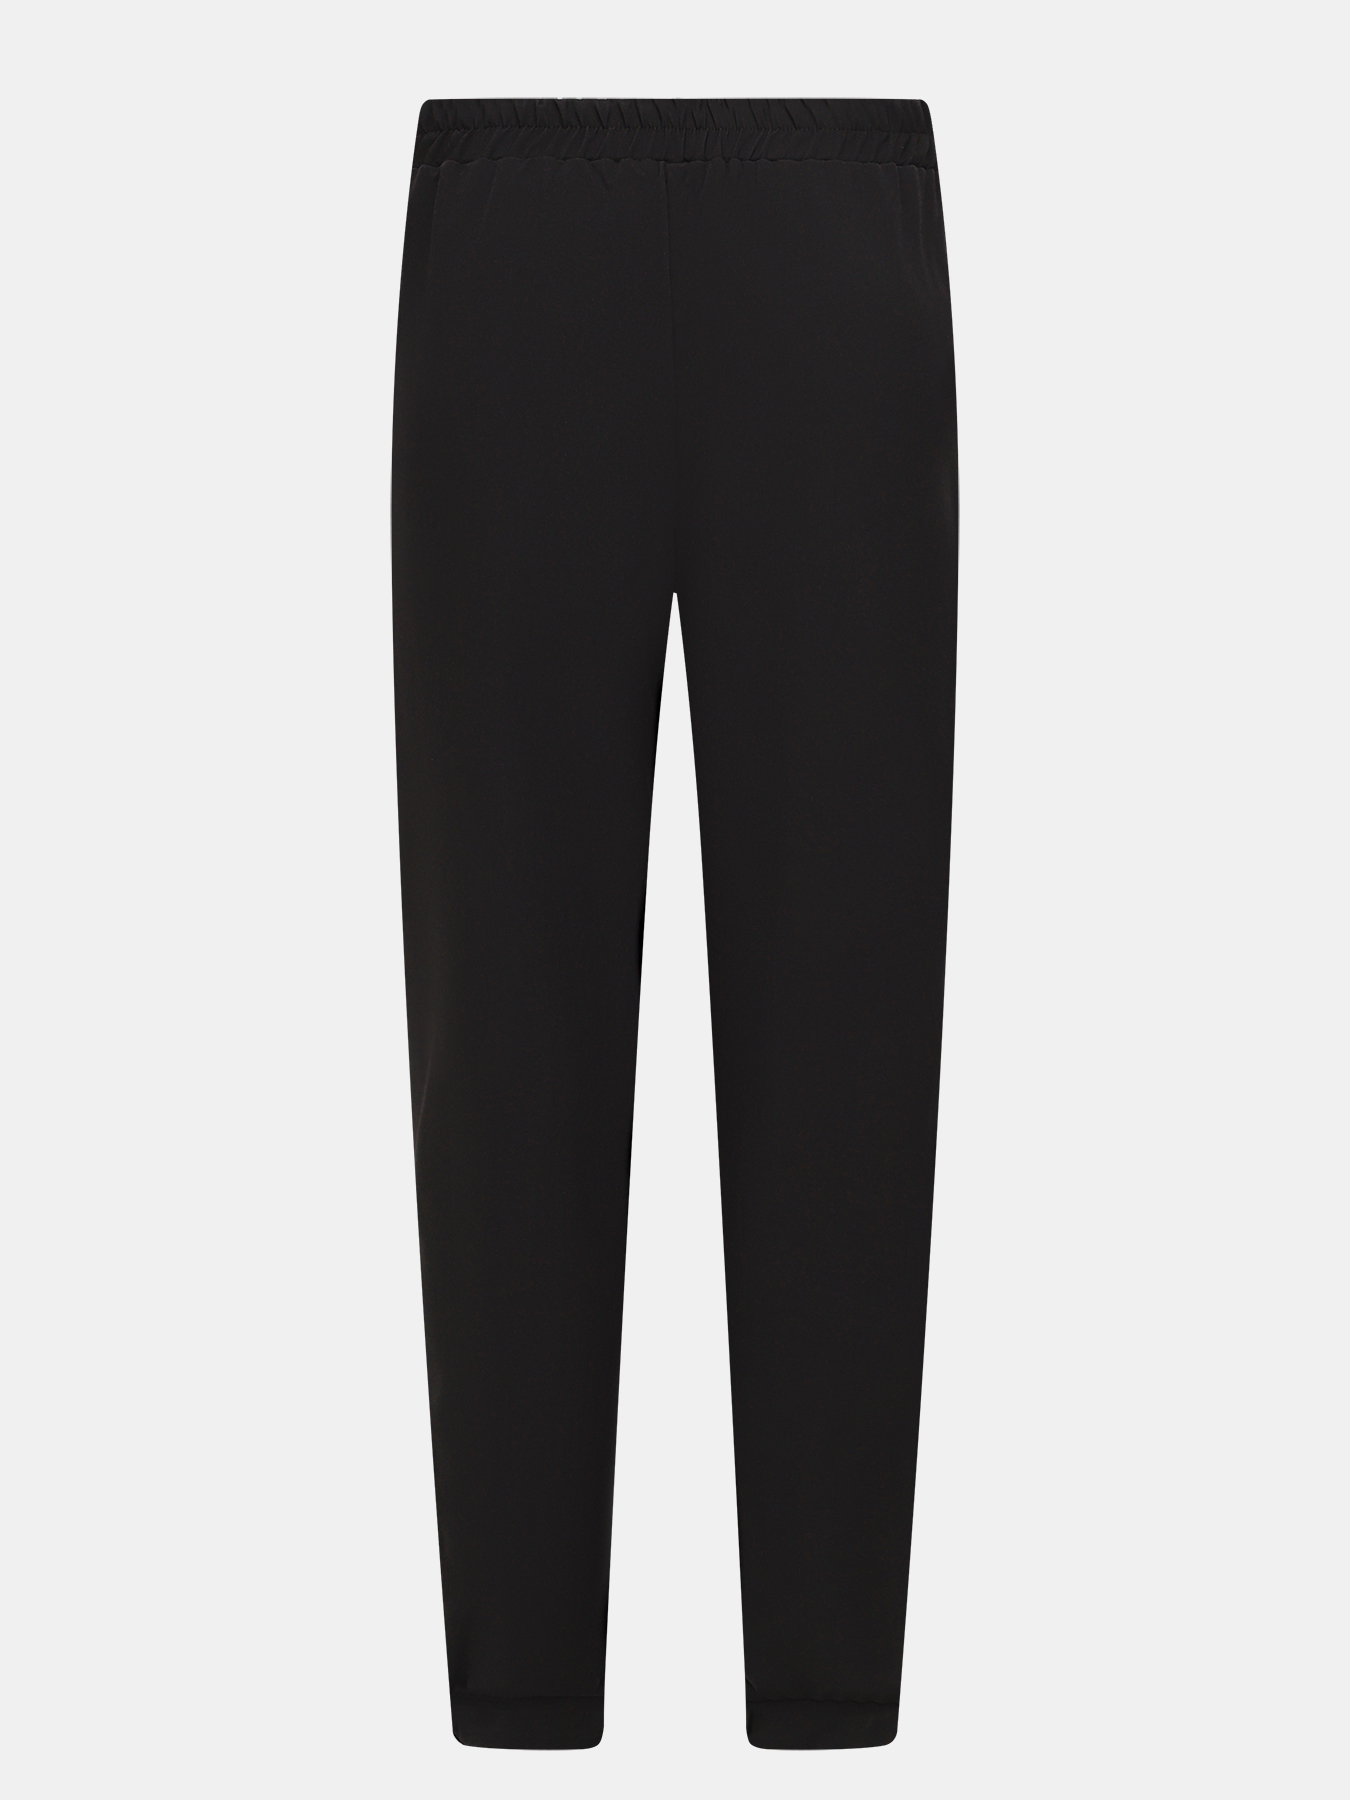 Спортивные брюки Rinascimento 390522-045, цвет черно-белый, размер 48-50 - фото 3